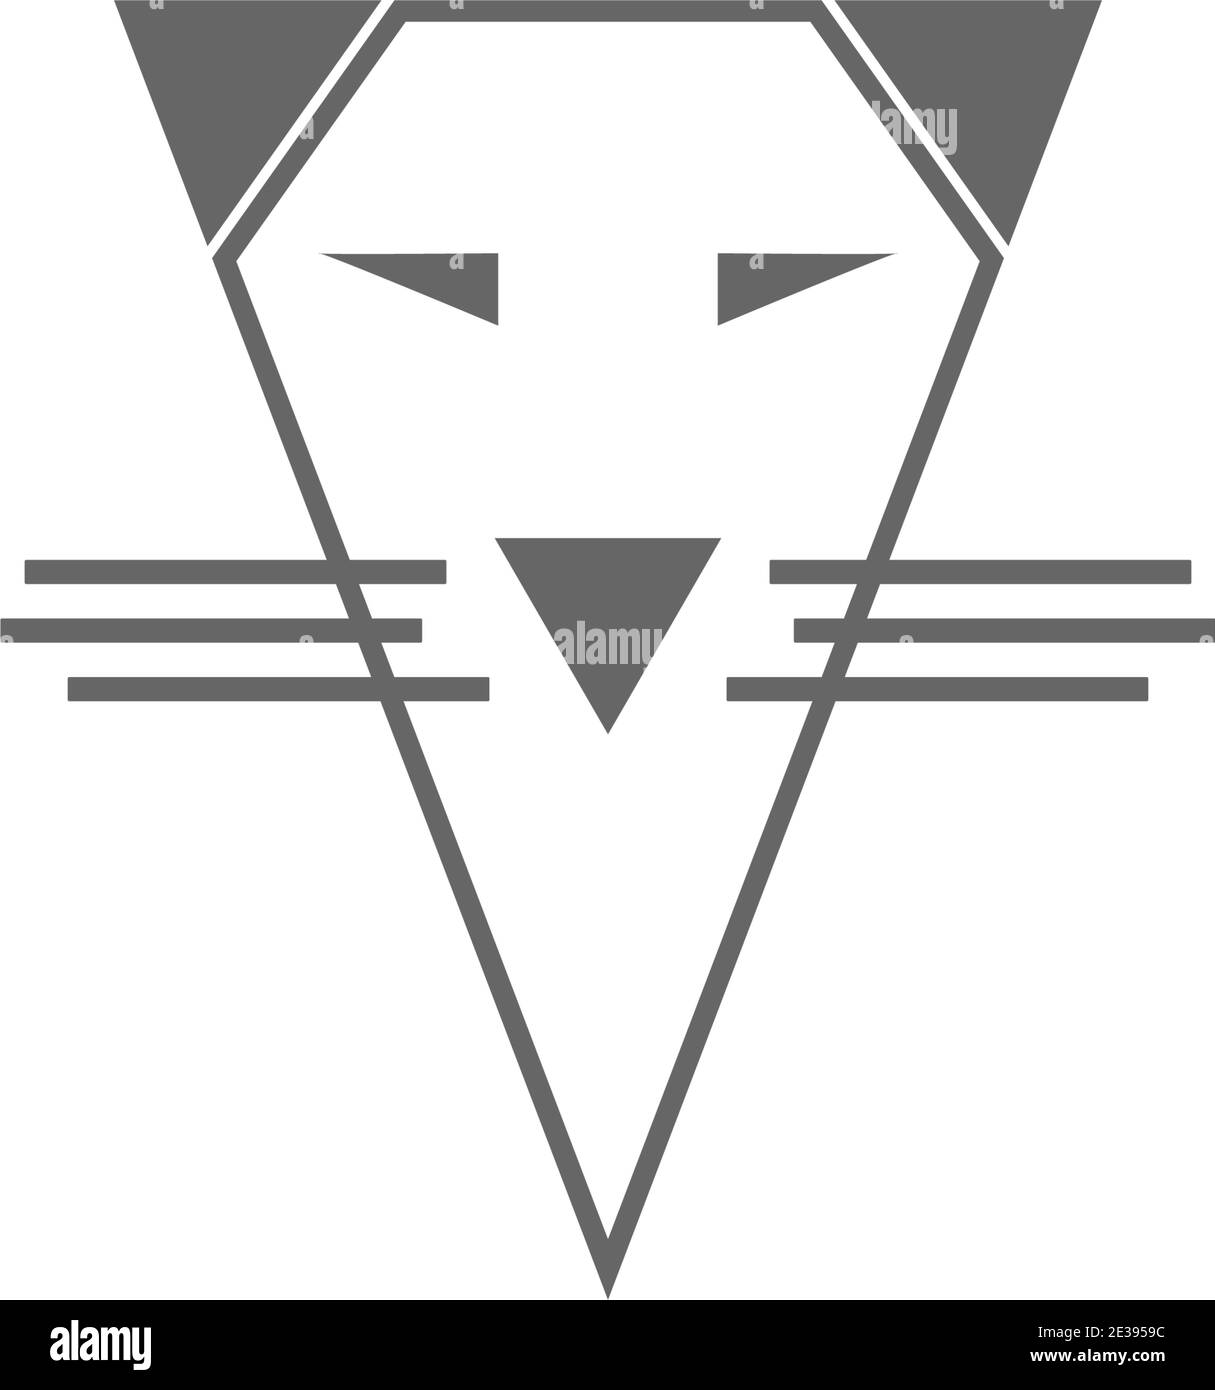 Modello vettoriale di illustrazione del logo dell'icona Cat Illustrazione Vettoriale